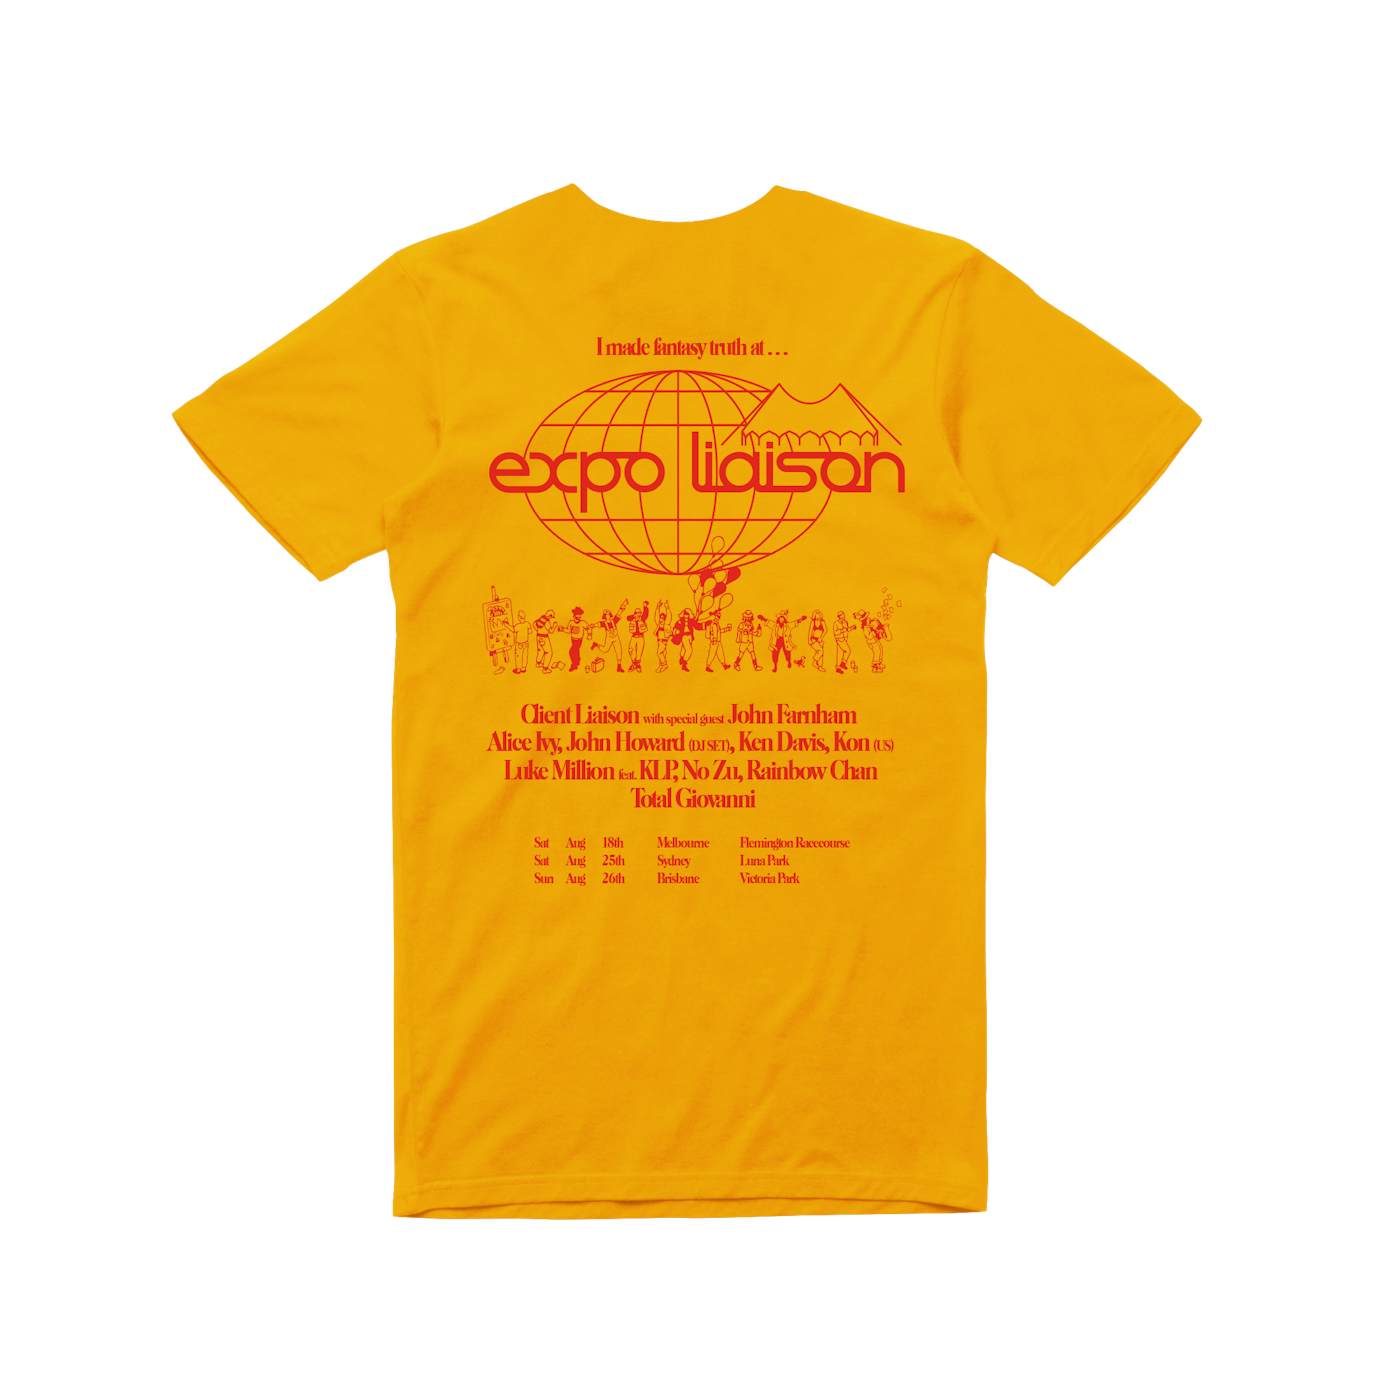 Client Liaison Expo  / Gold T-shirt